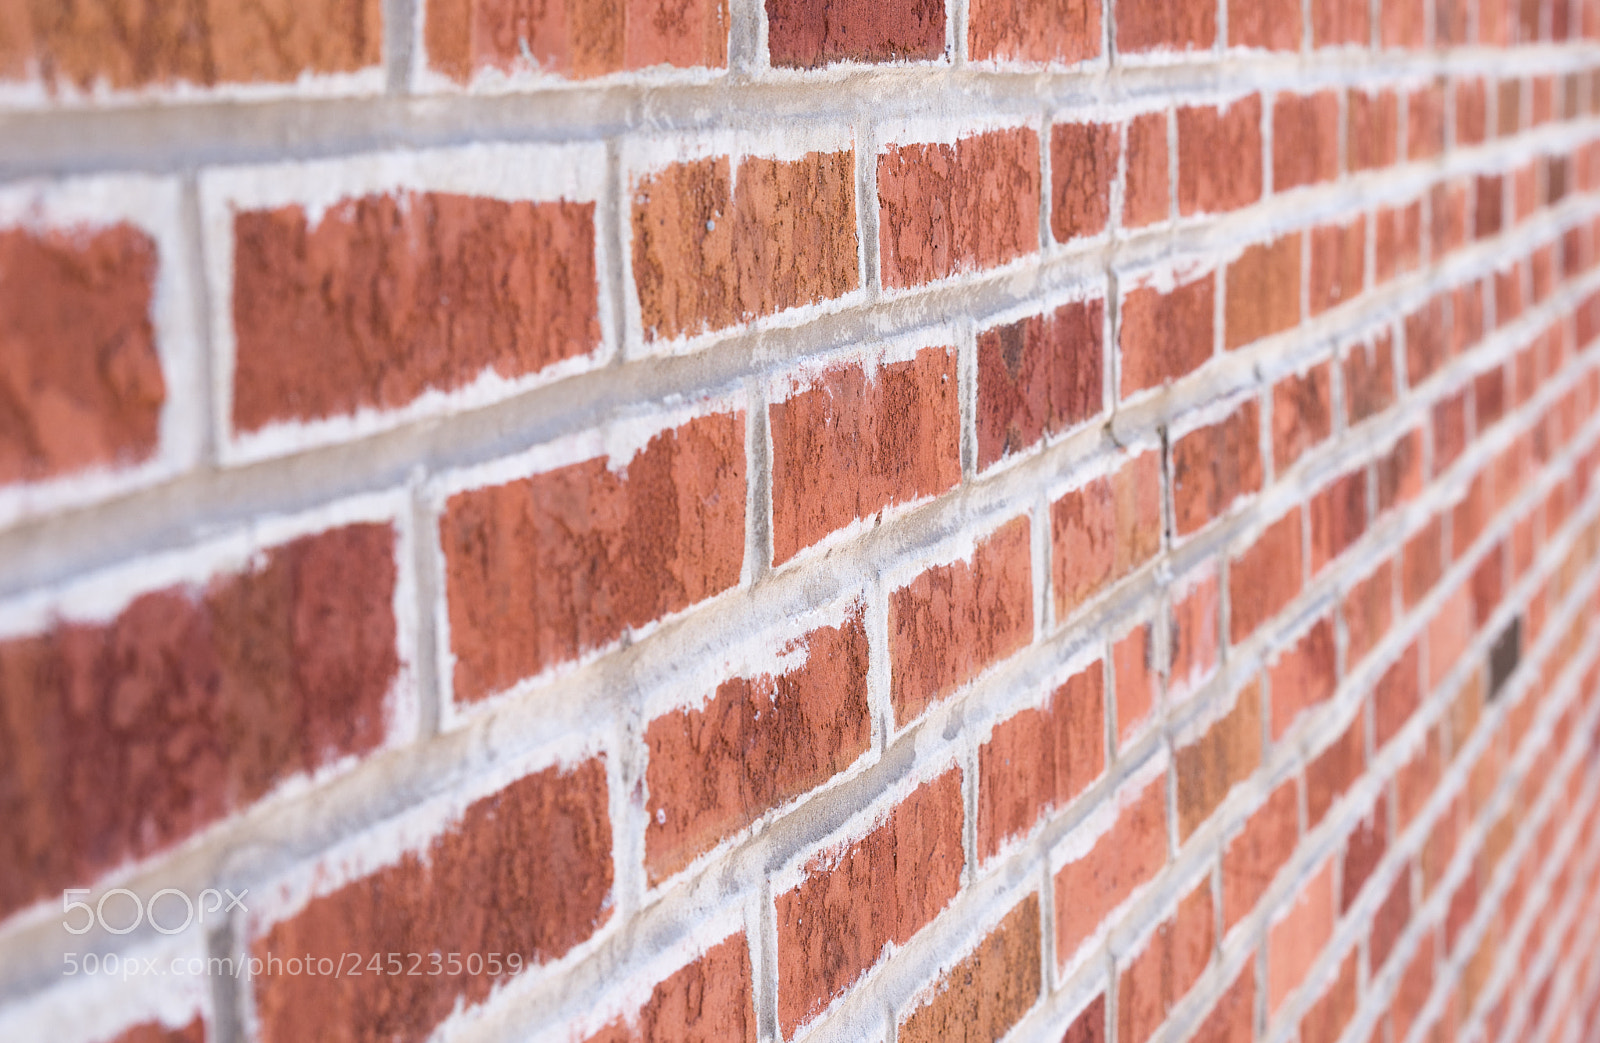 Nikon D750 sample photo. Red brick wall close photography